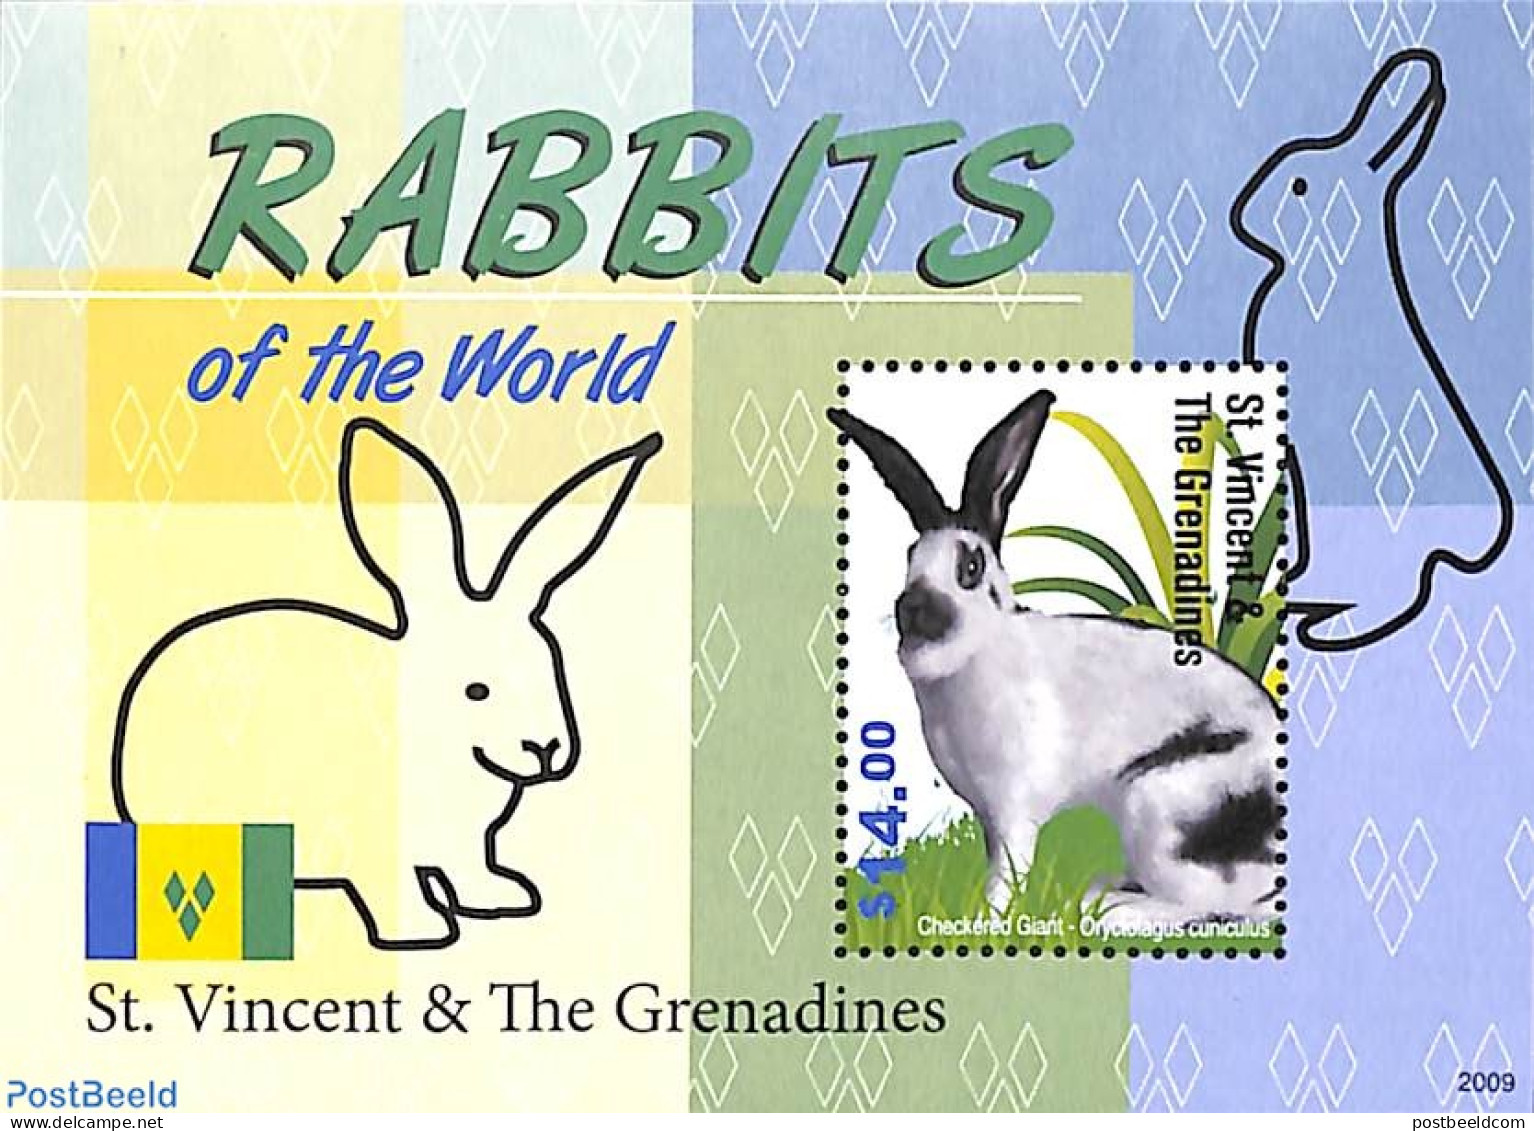 Saint Vincent 2020 Rabbits S/s, Mint NH, Nature - Rabbits / Hares - St.Vincent (1979-...)